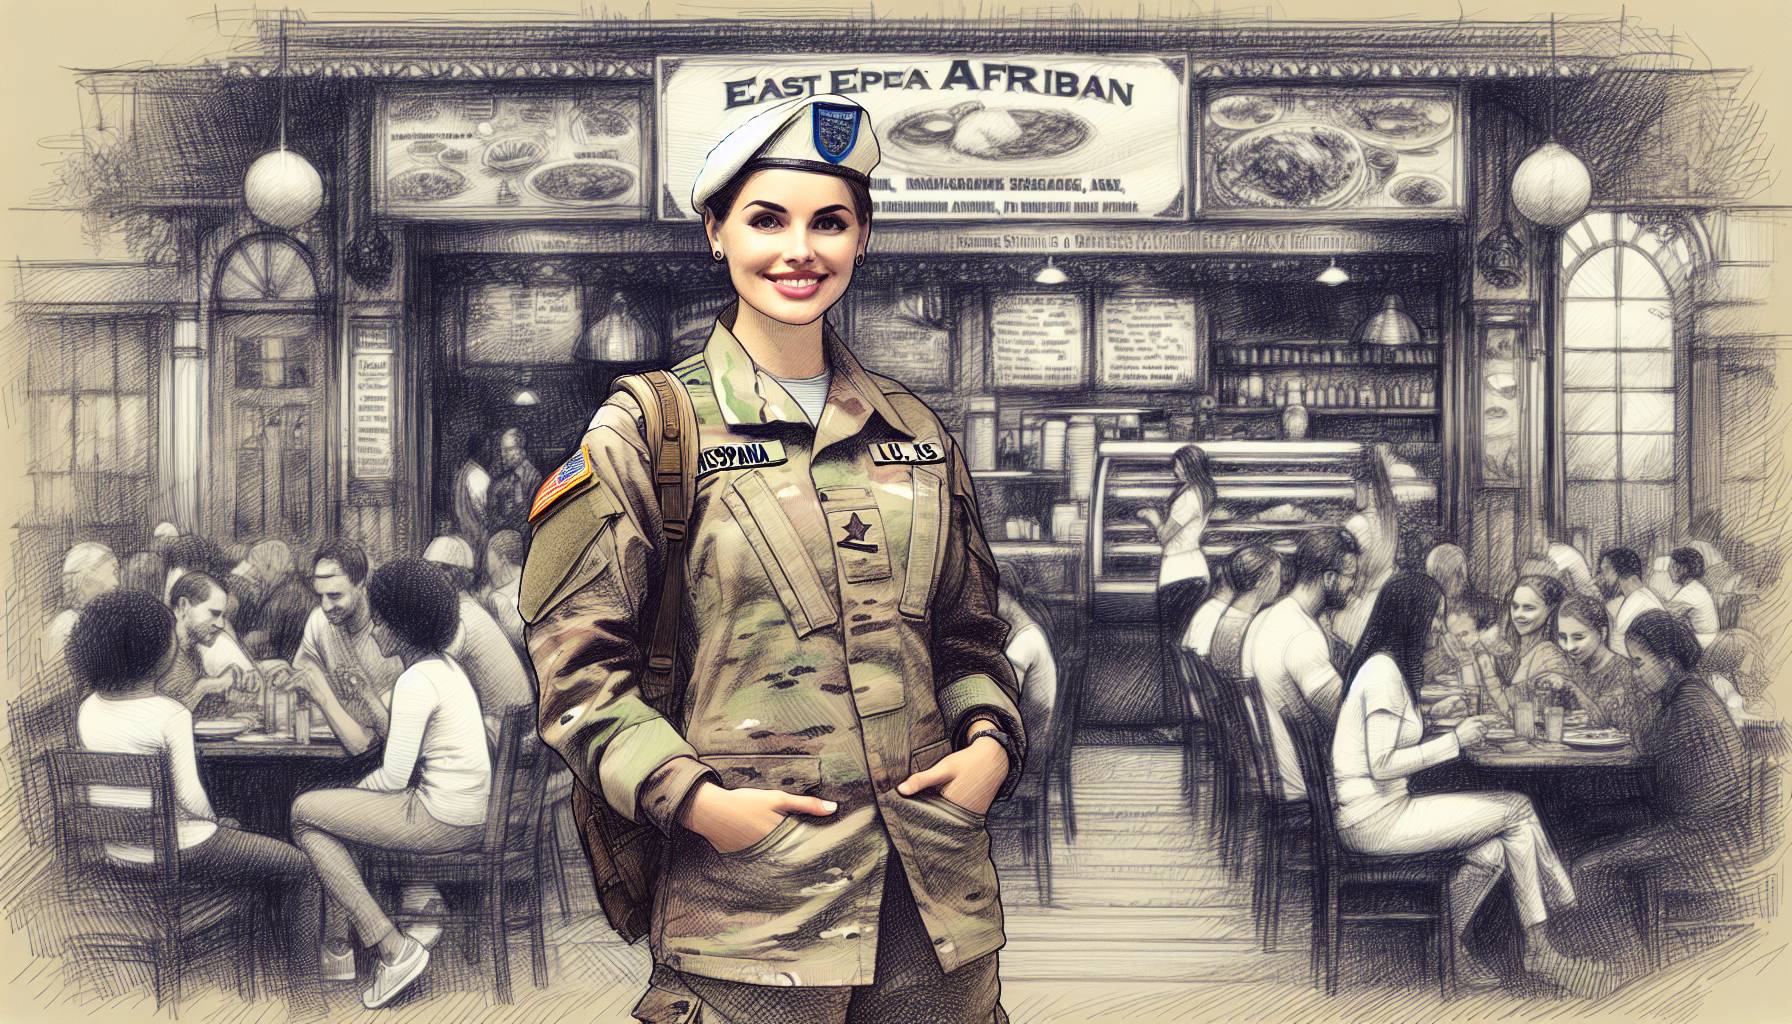 "Servicewoman's African Restaurant"